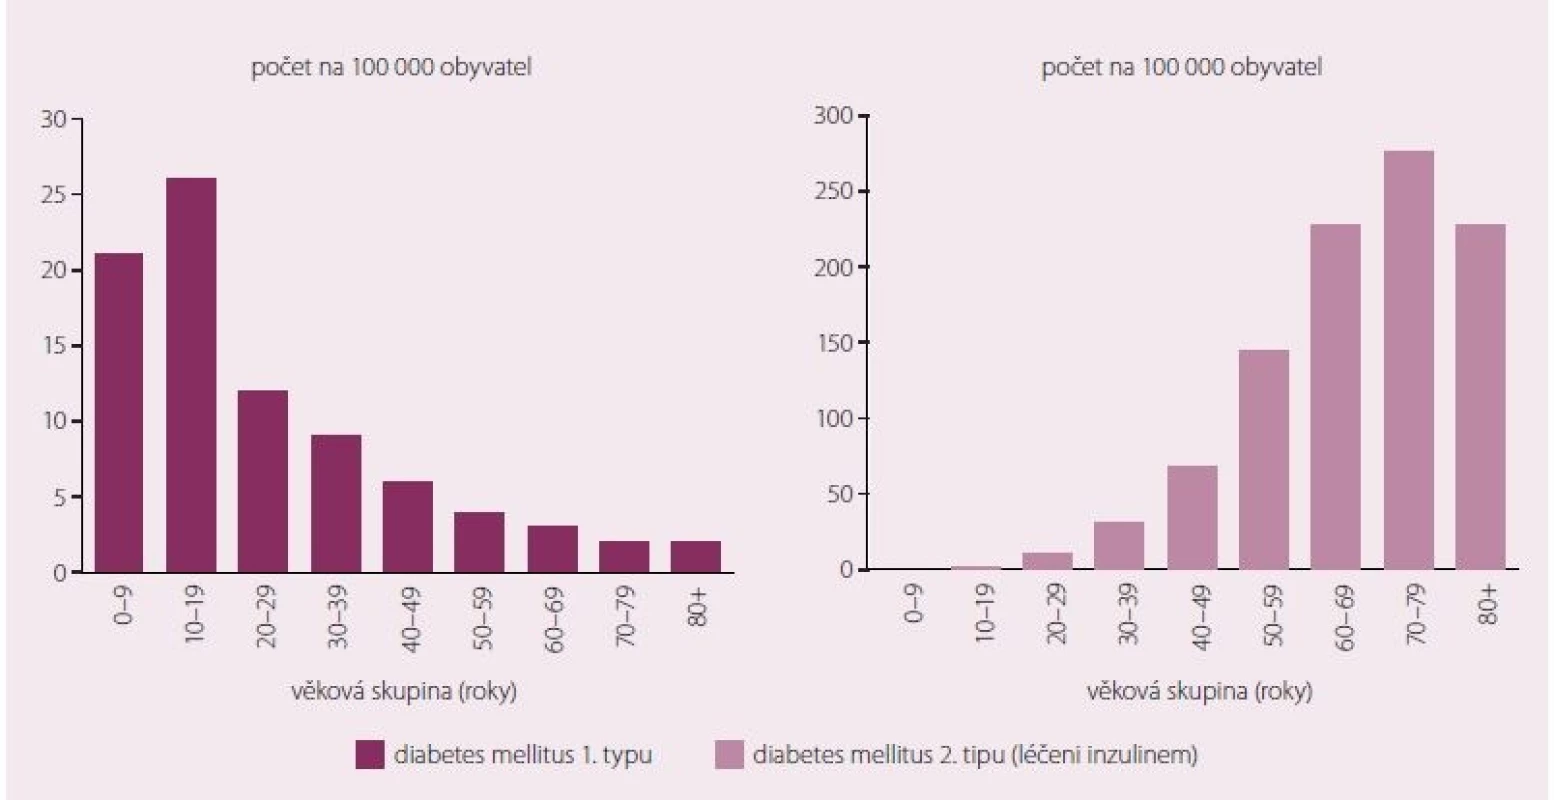 Incidence diabetu 1. a 2. typu léčeného inzulinem v australské populaci podle věku v roce 2014 [2].